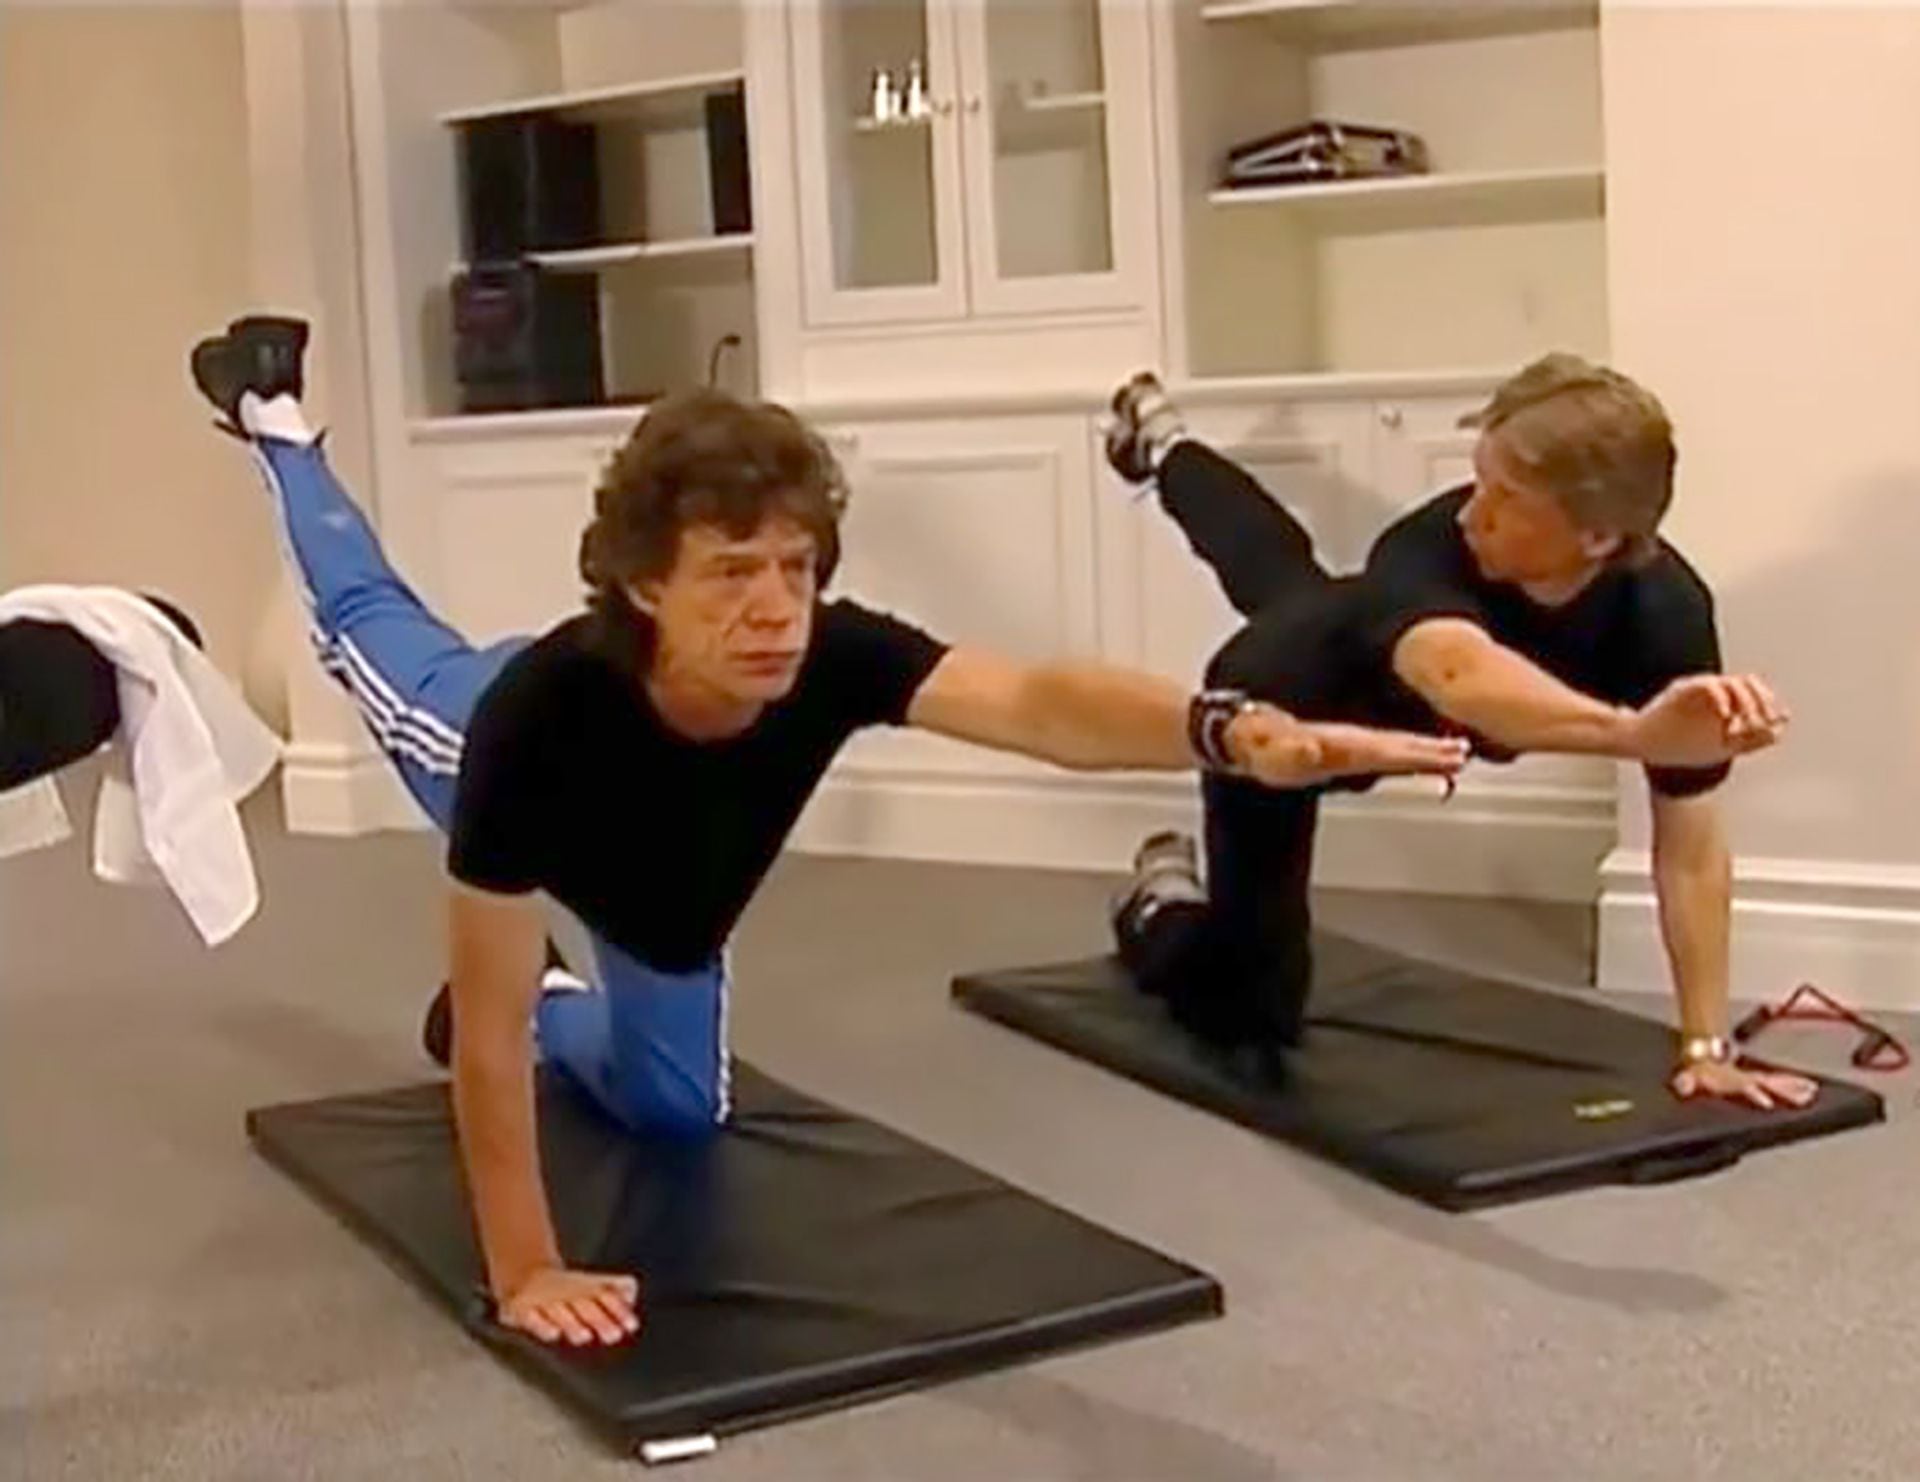 A sus 80 años, Mick Jagger sorprende con un estado físico excepcional, fruto de intensos entrenamientos con su coach, Torje Eike